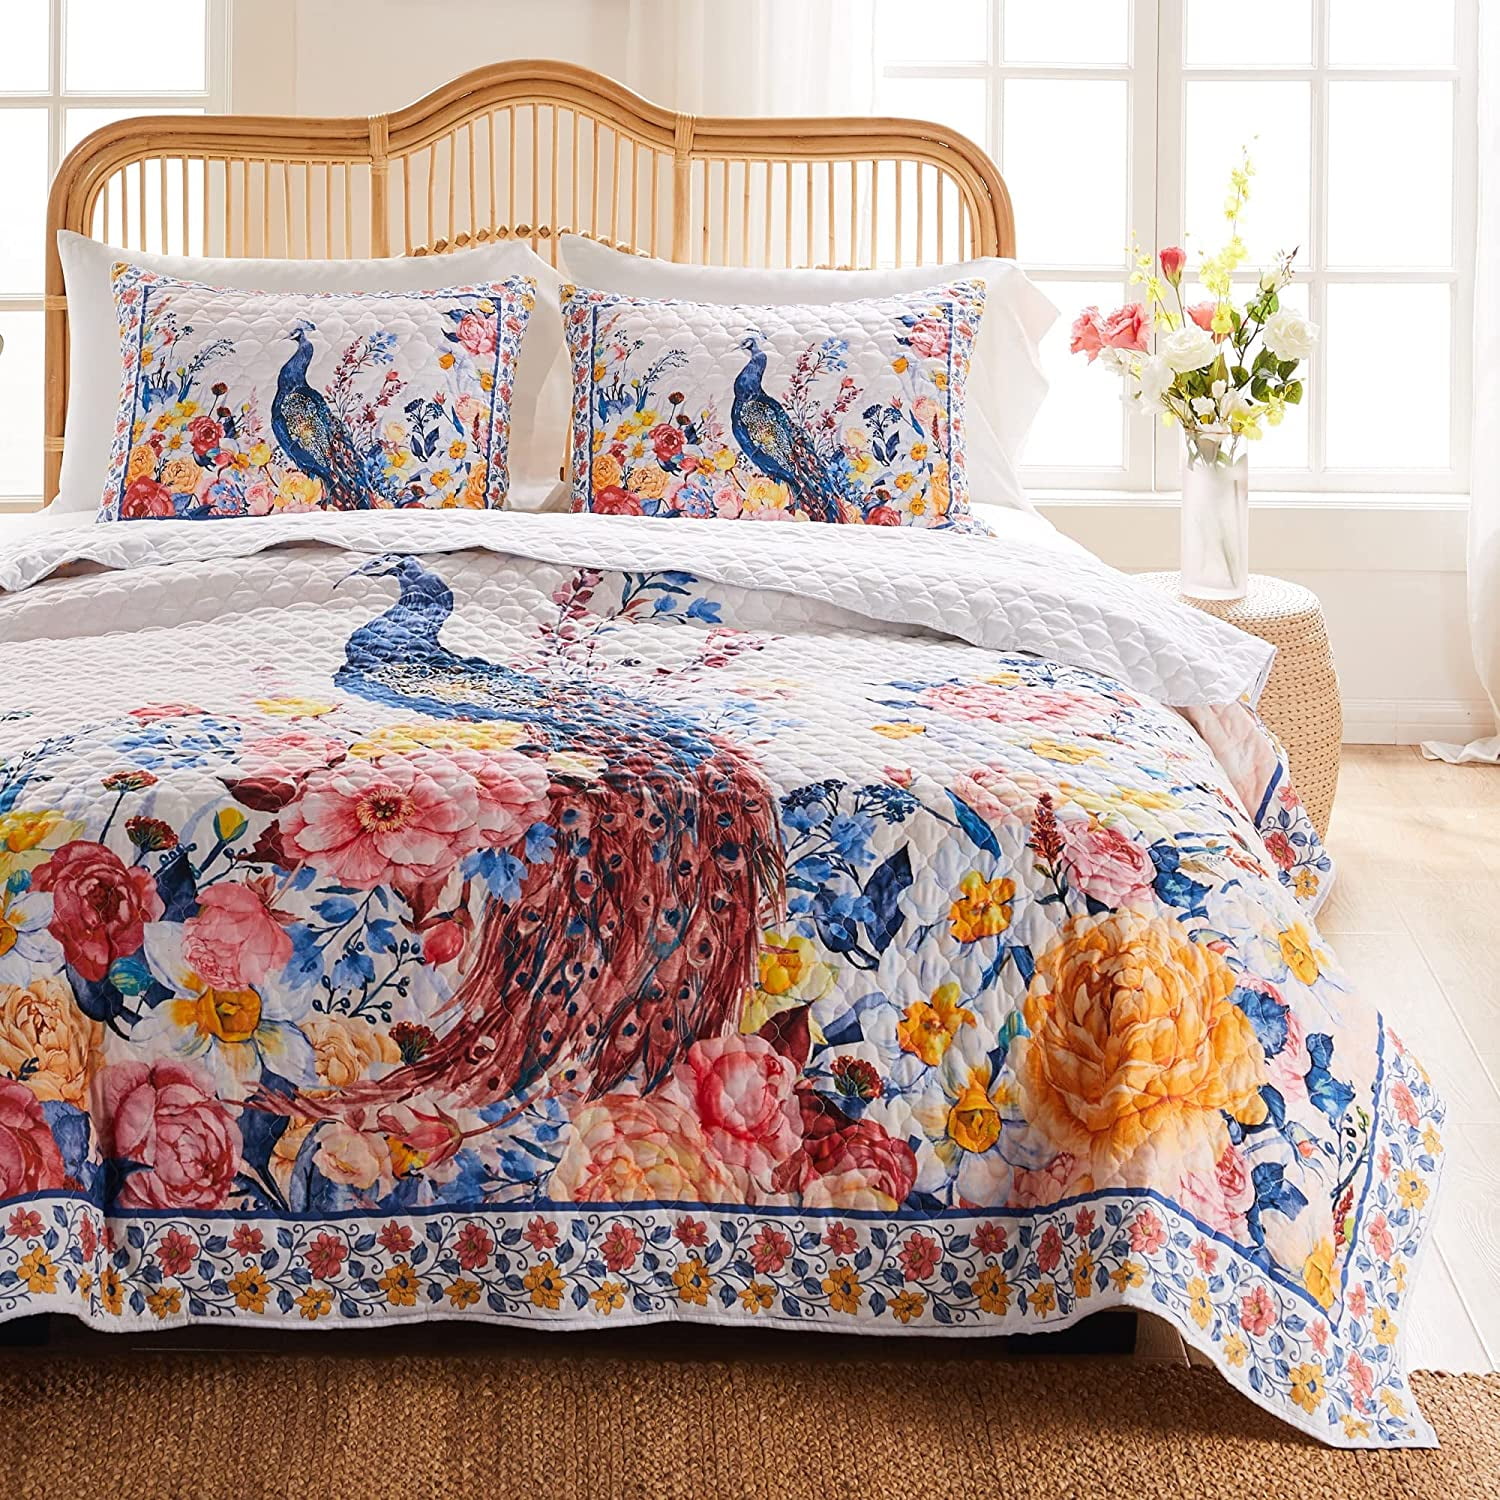 Details about   Vintage Floral Kantha Quilt Blanket Indian Bedspread Coverlet Throw Art 